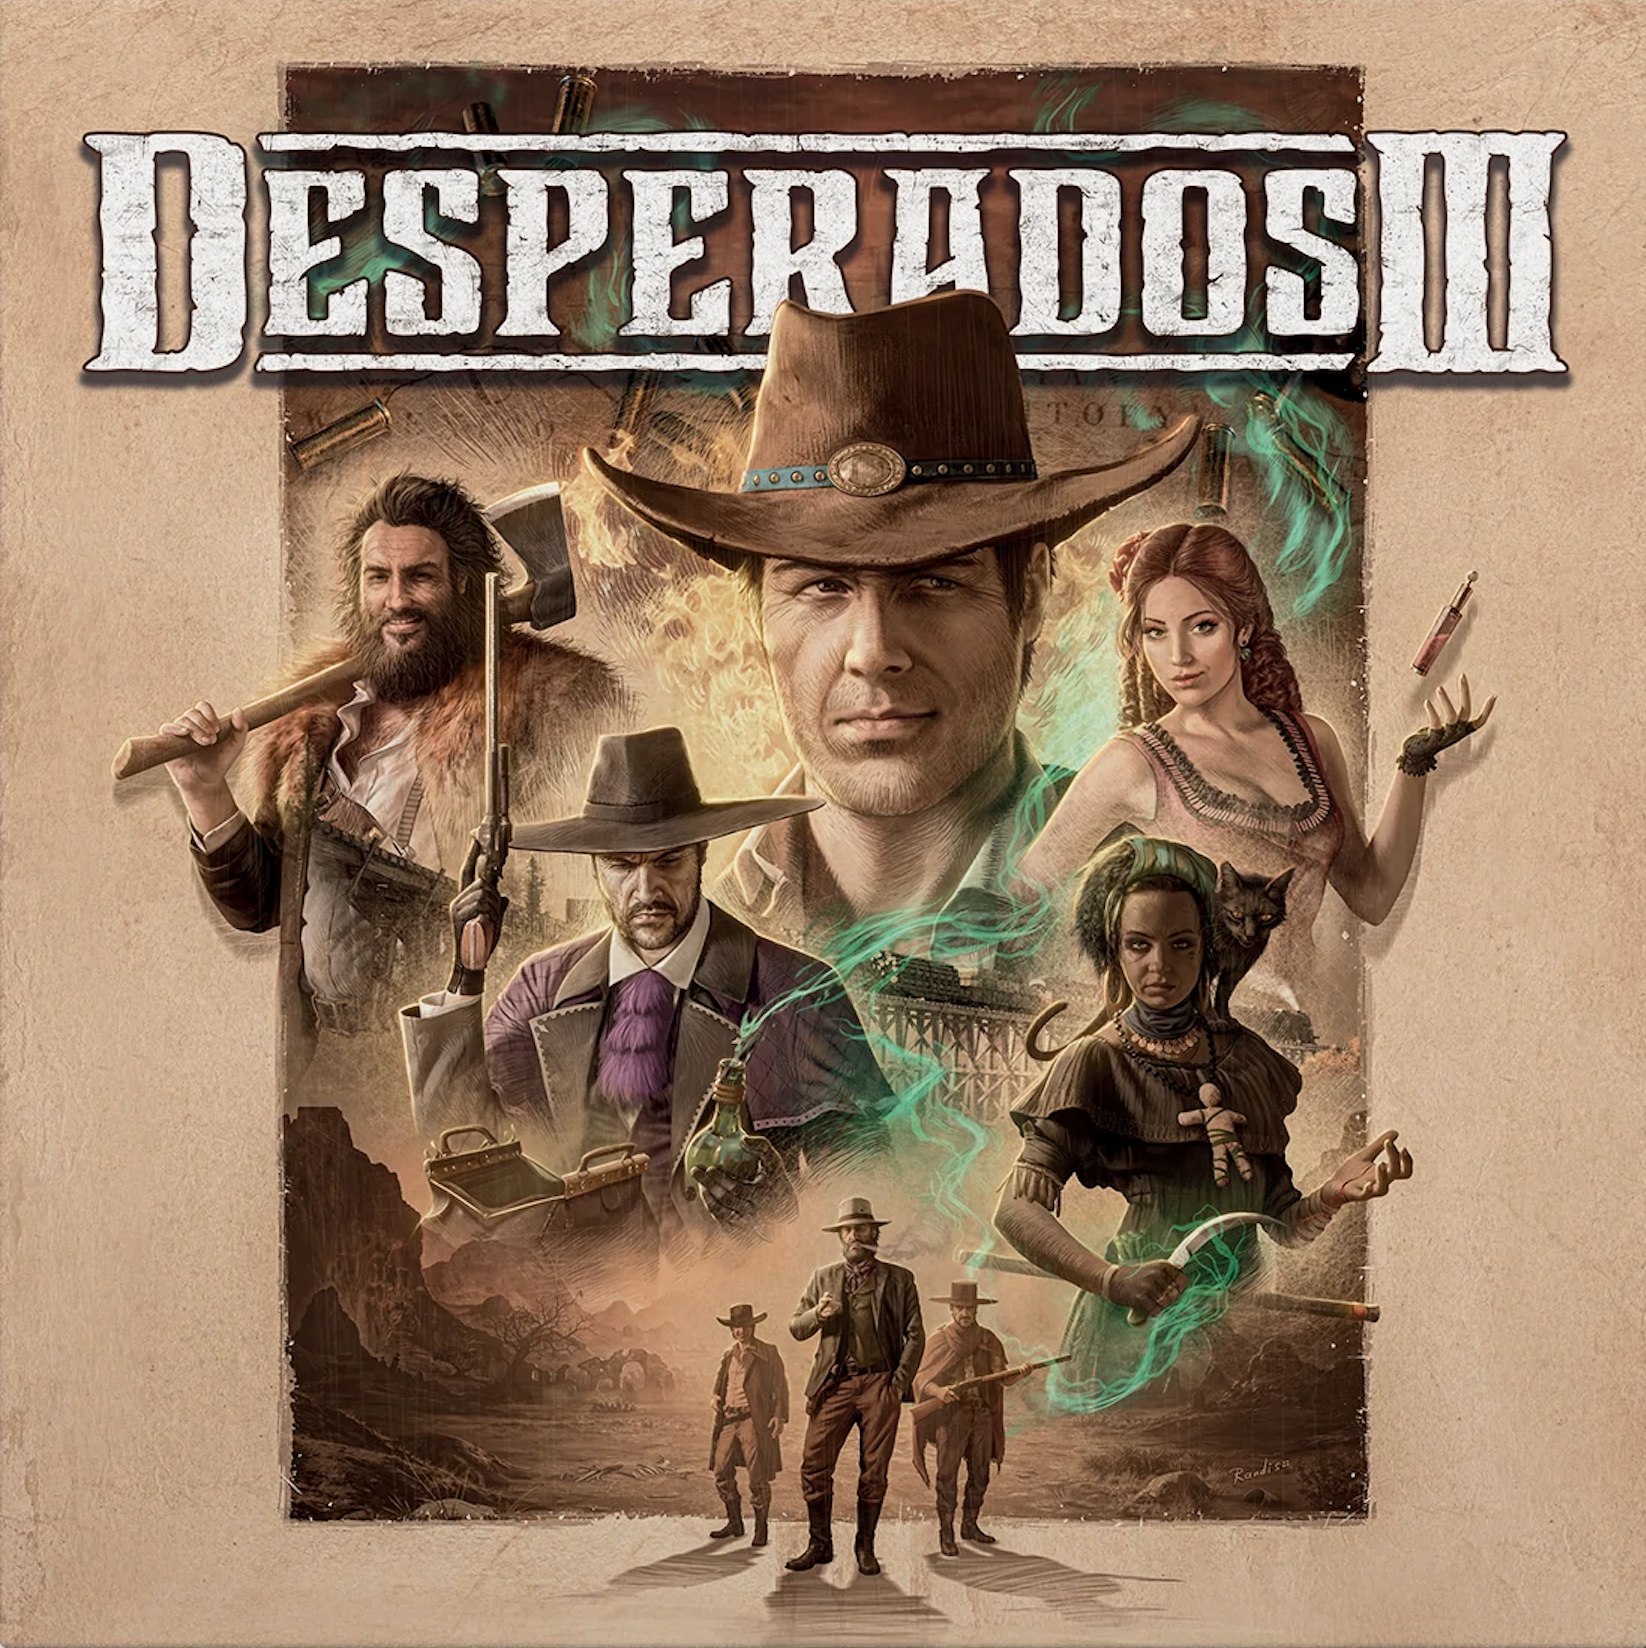 Desperados Original Price & Reviews